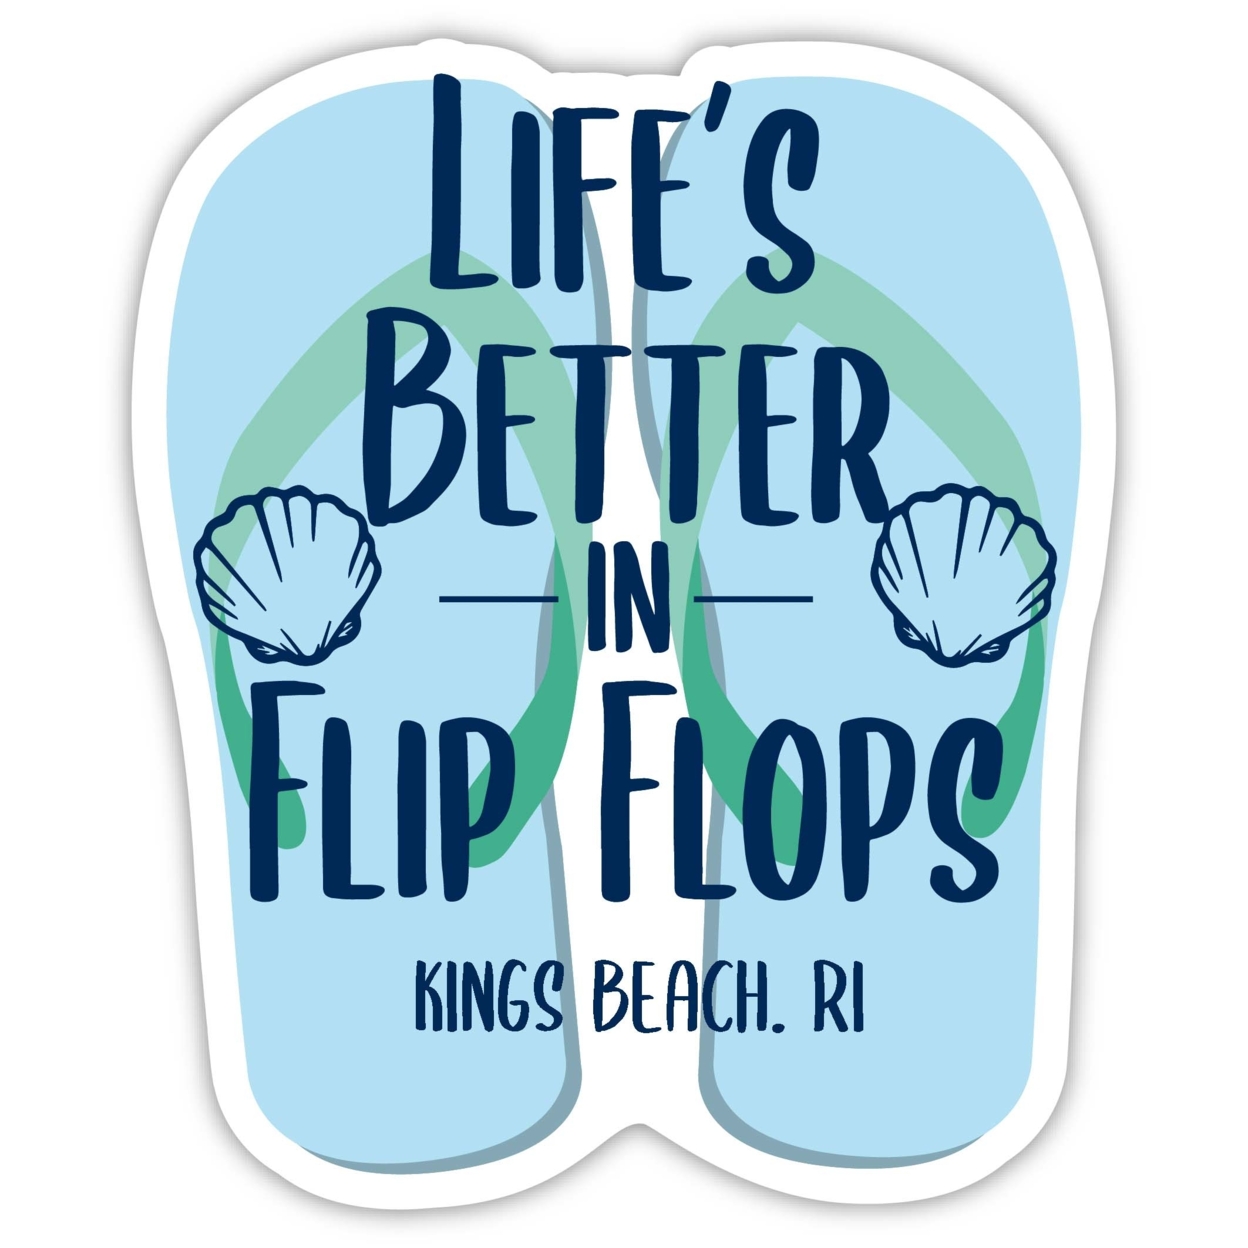 Kings Beach Rhode Island Souvenir 4 Inch Vinyl Decal Sticker Flip Flop Design